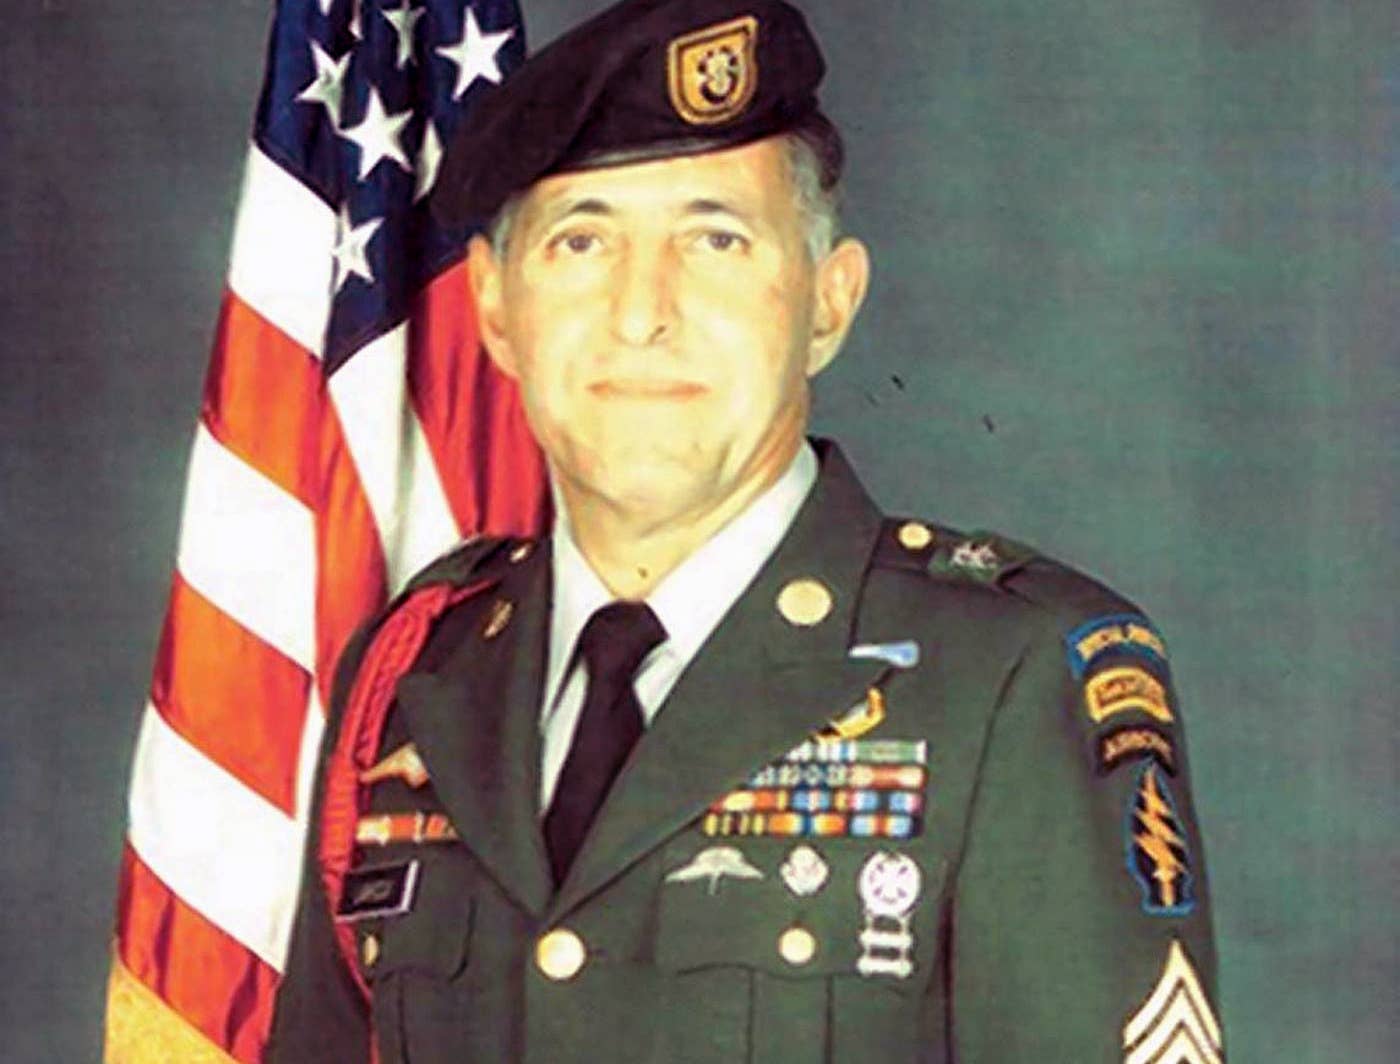 Master Sgt. Changiz Lahidji, U.S. Army. (Changiz Lahidji)